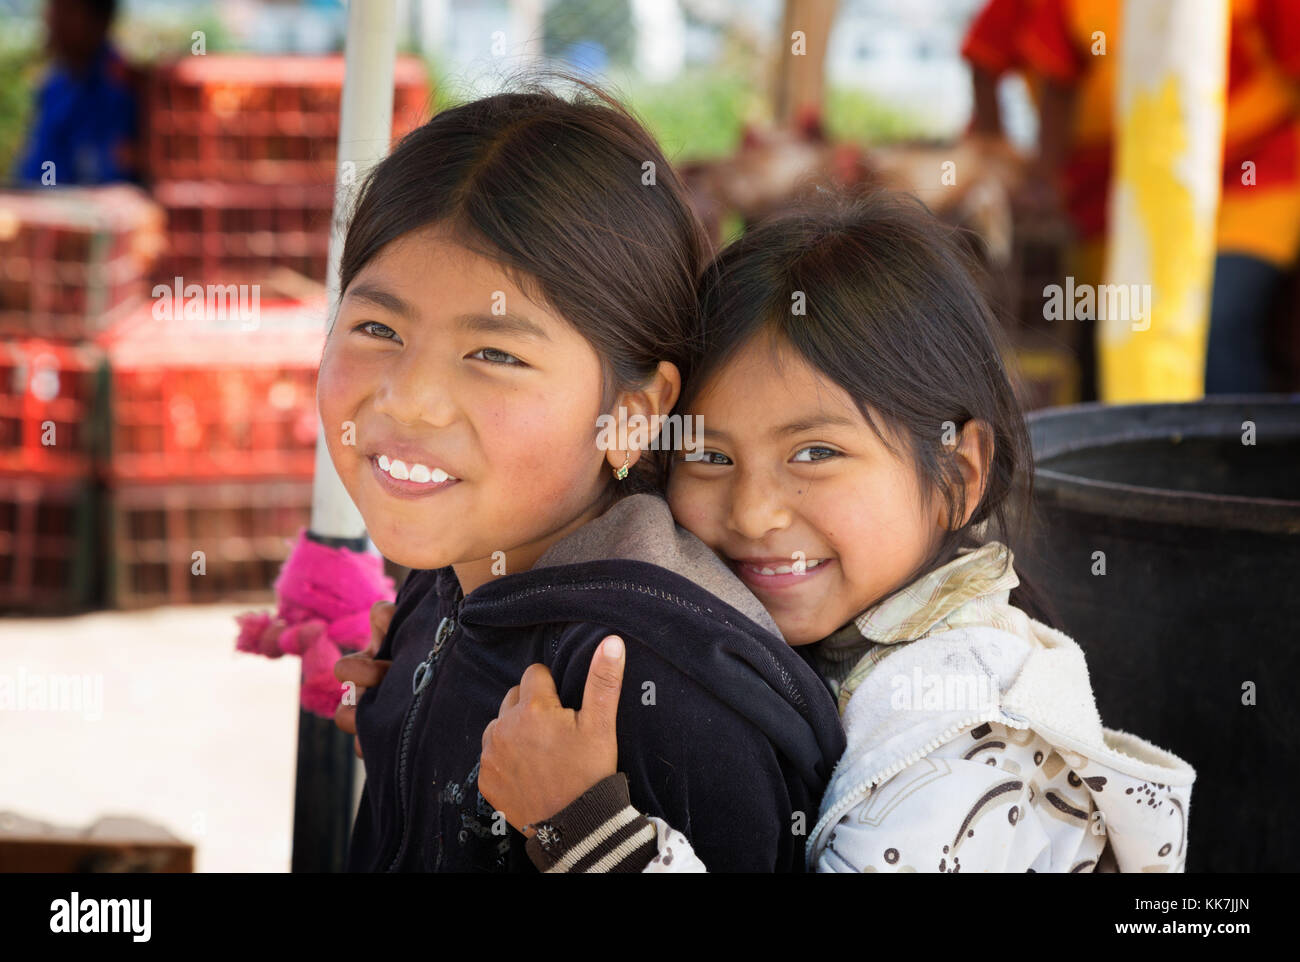 Ecuador children - two young indigenous Ecuadorian girls aged 8-10 years; Otavalo, Ecuador South America Stock Photo